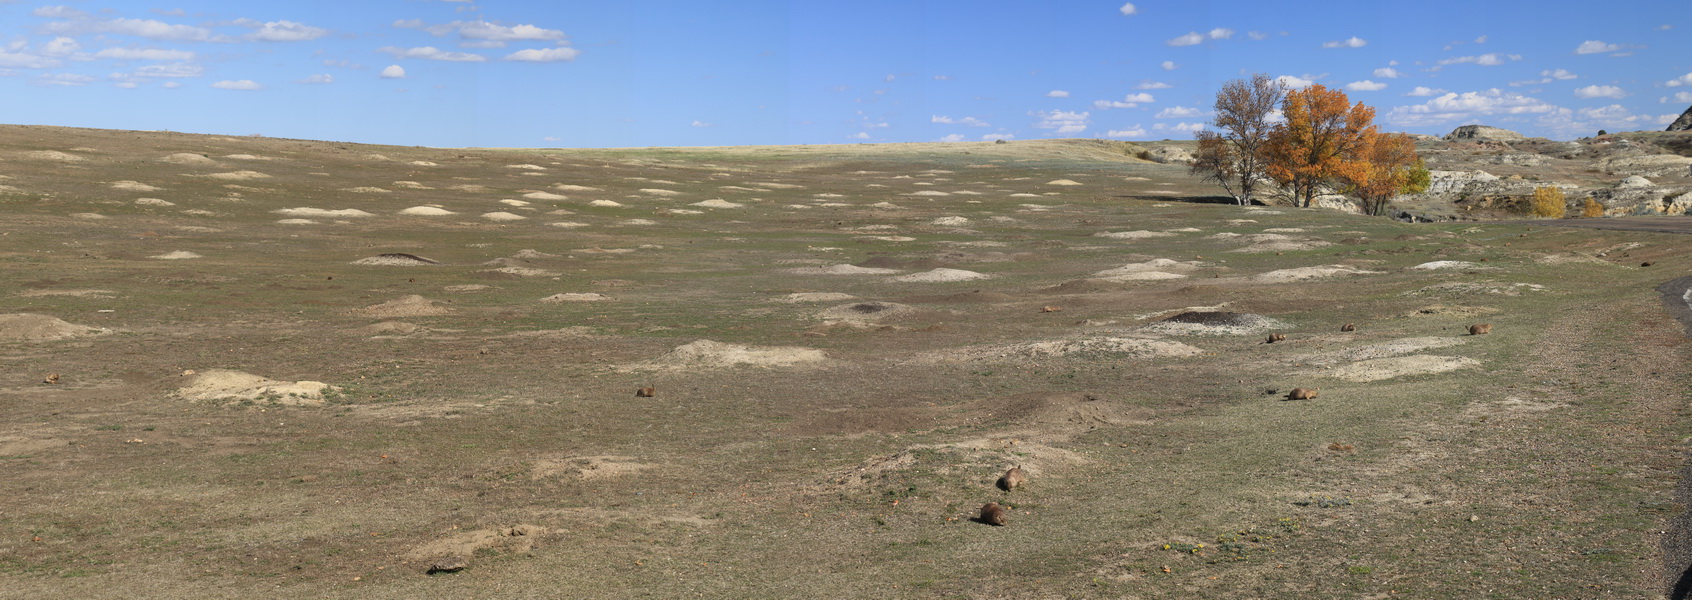 Prairie dog town, een hele 'stad' met holen en prairie dogs